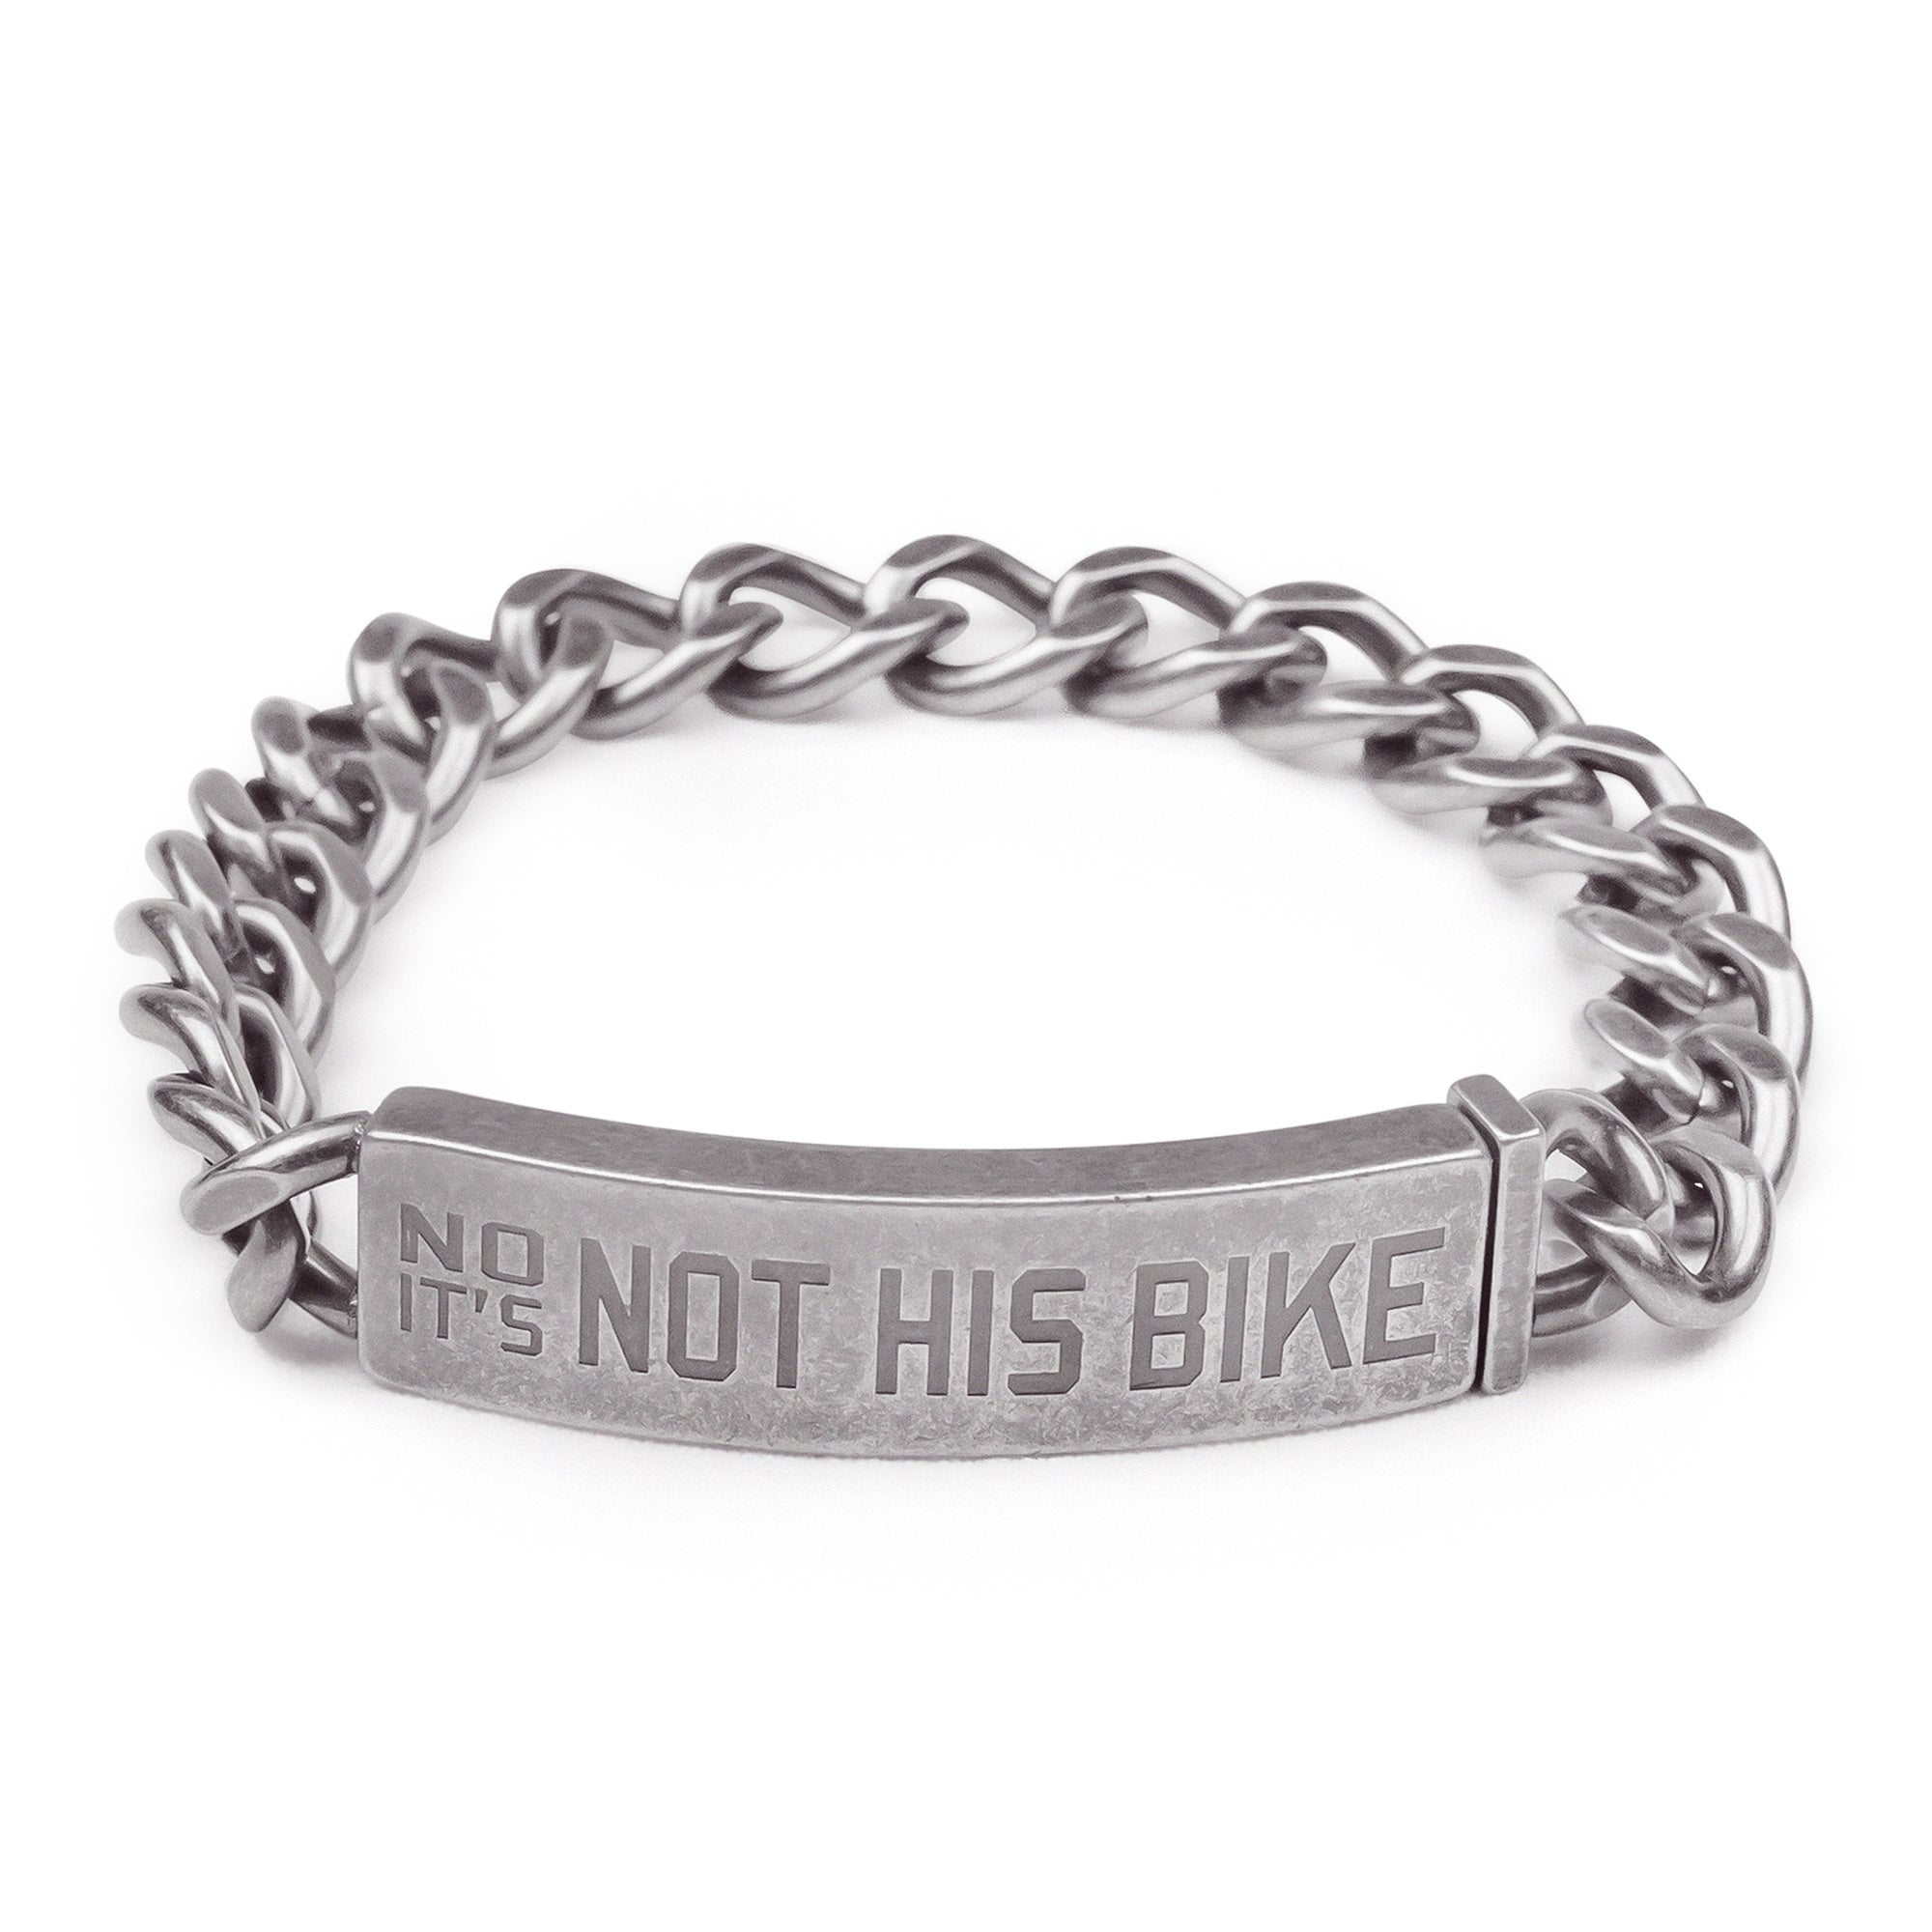 Not His Bike - Motorcycle Bracelet